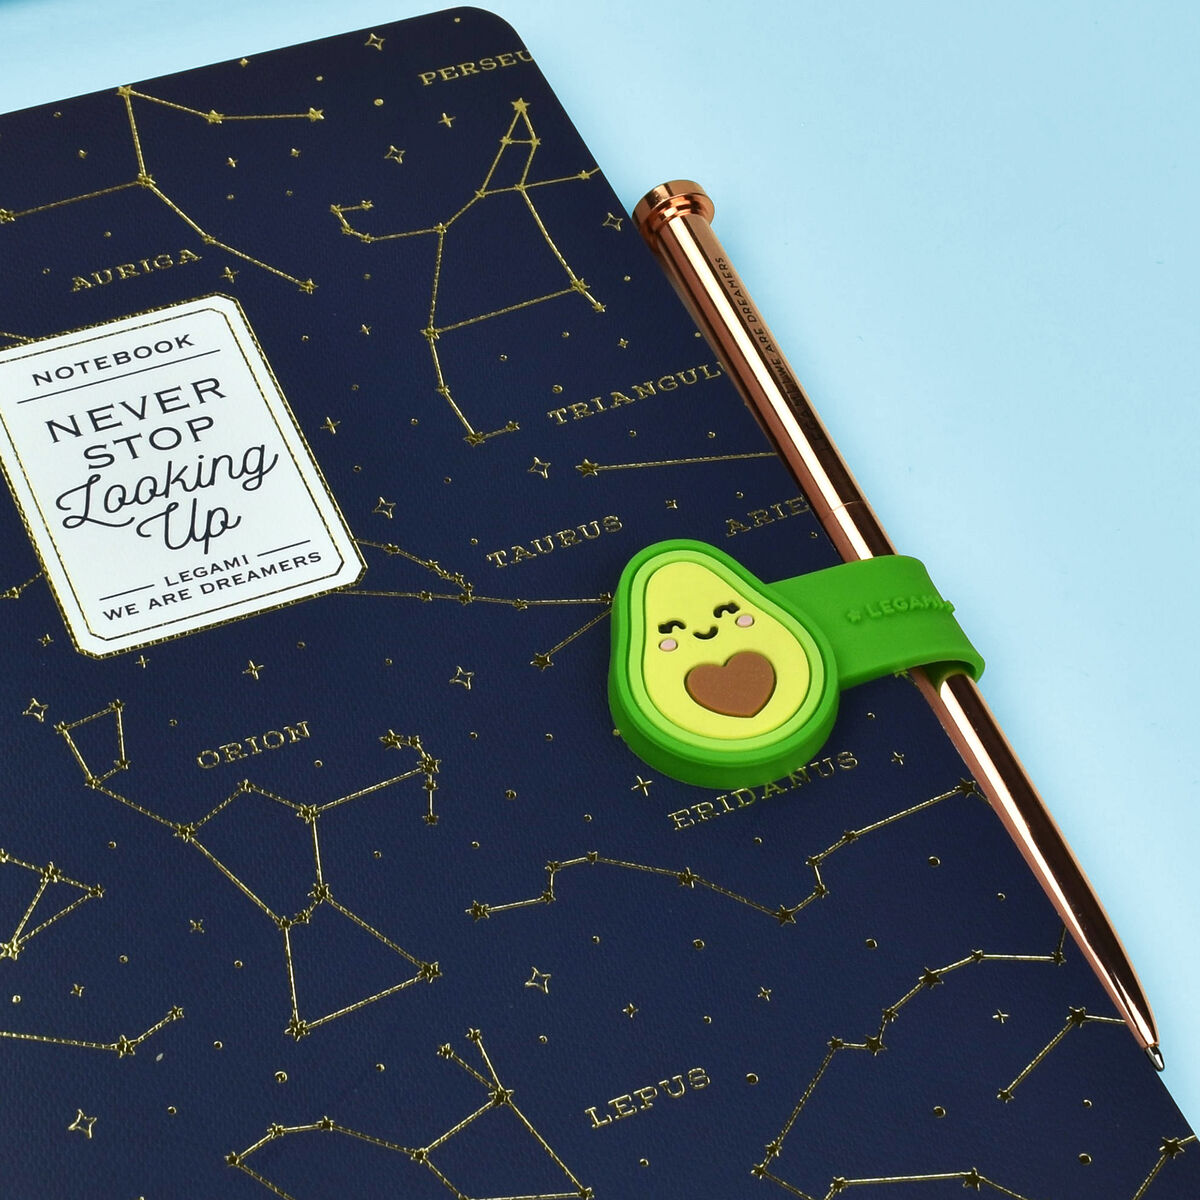 LEGAMI magnetischer Clip Avocado 1 | Idee regalo per fan degli avocado